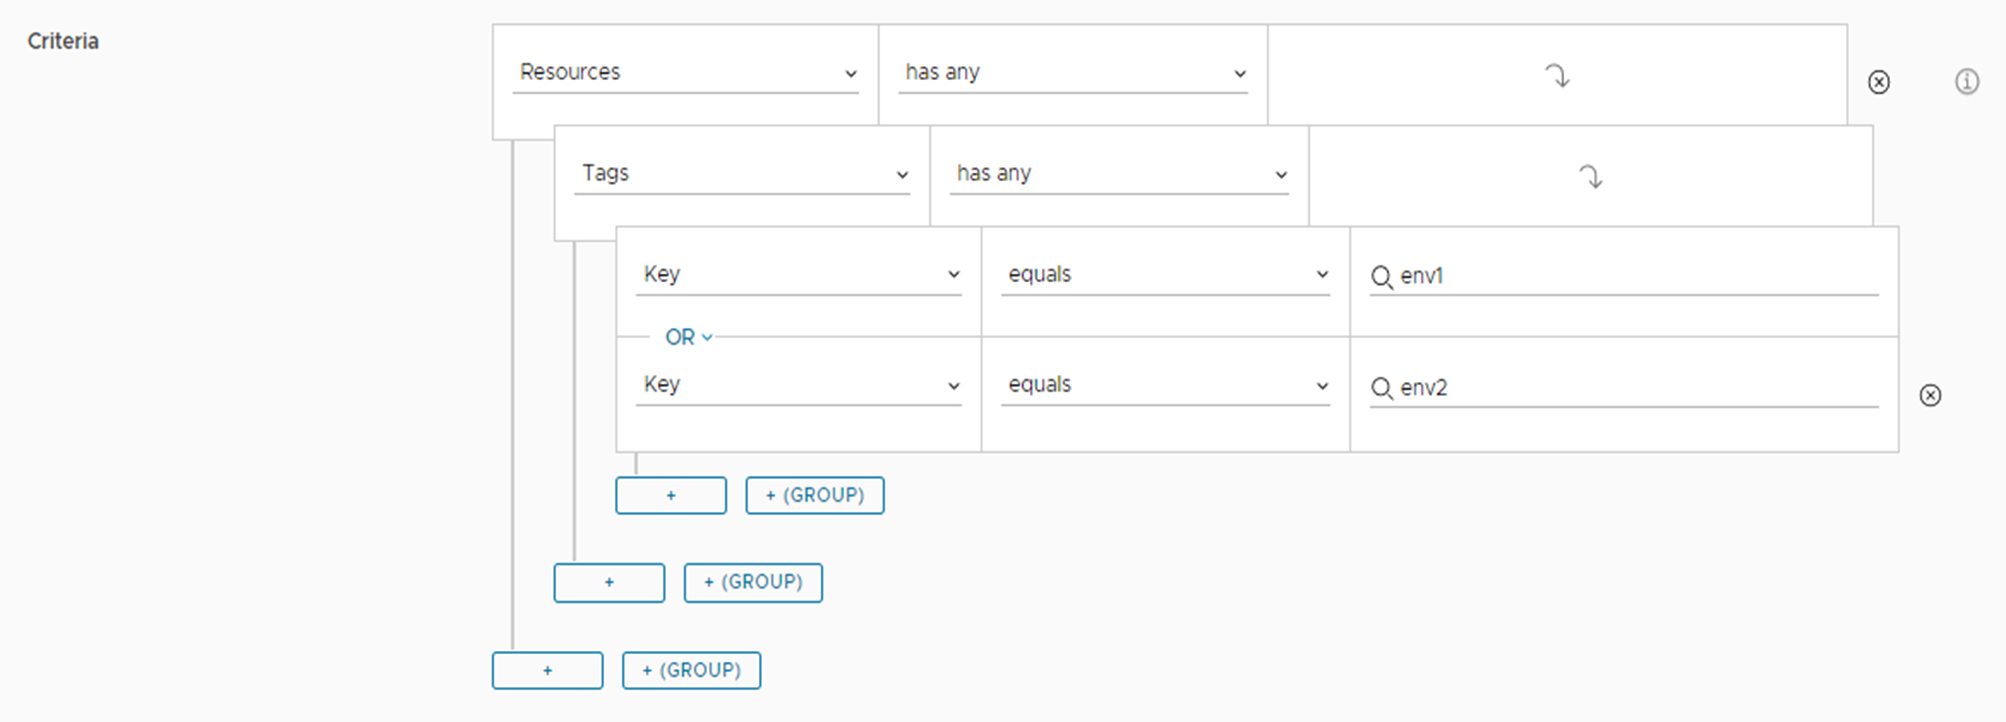 Пример выражения для критериев развертывания с несколькими ключами, отображаемого в пользовательском интерфейсе.